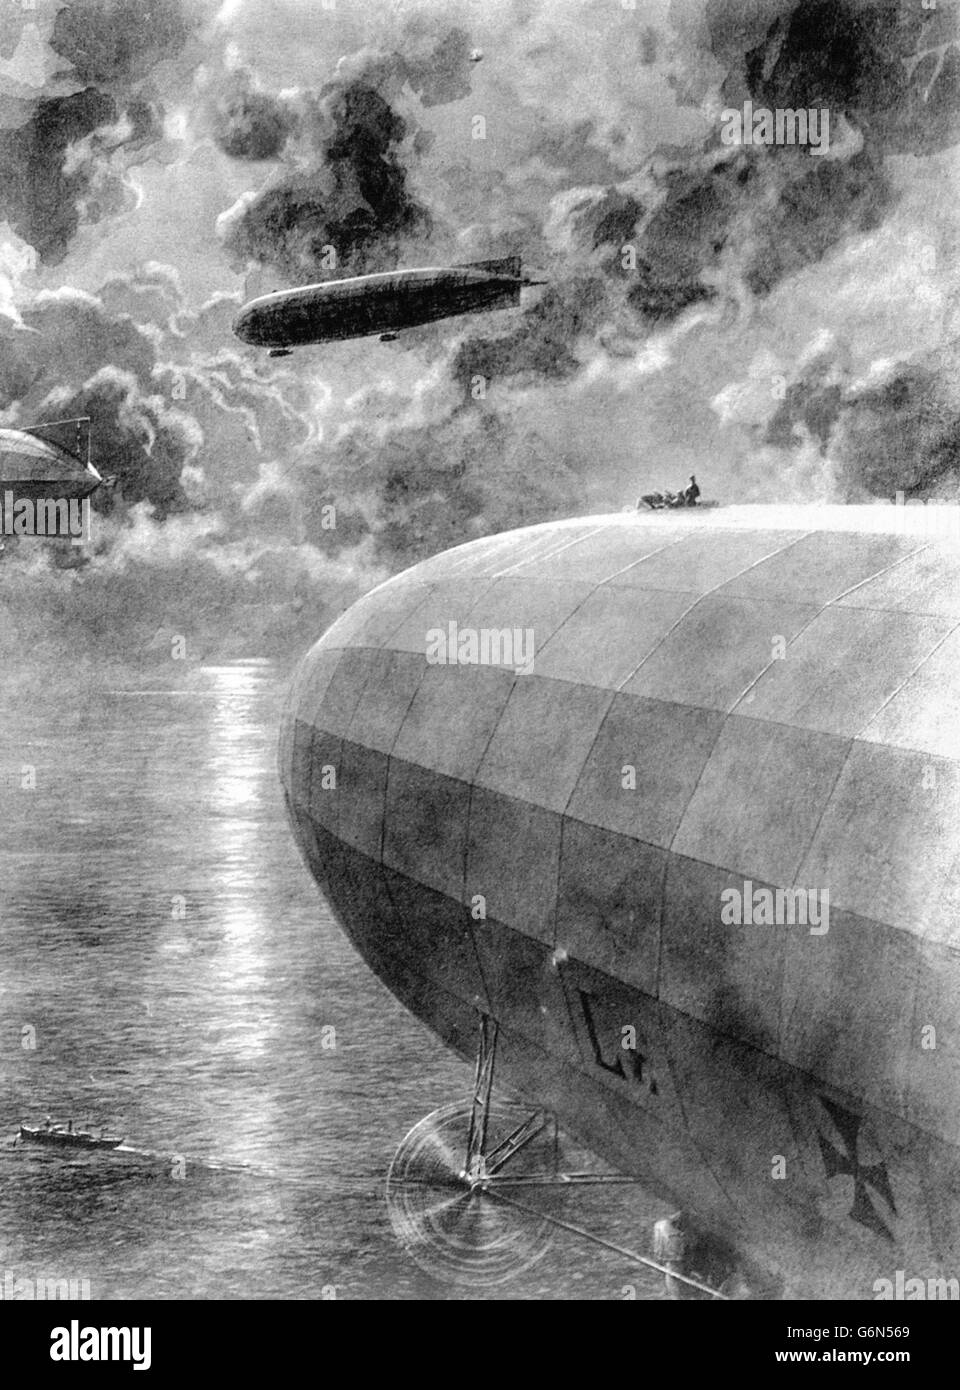 19 janvier - en ce jour de l'histoire - 1915 en ce jour de 1915, le premier raid de navires aériens allemands sur le continent de la Grande-Bretagne a fait 4 morts. Banque D'Images